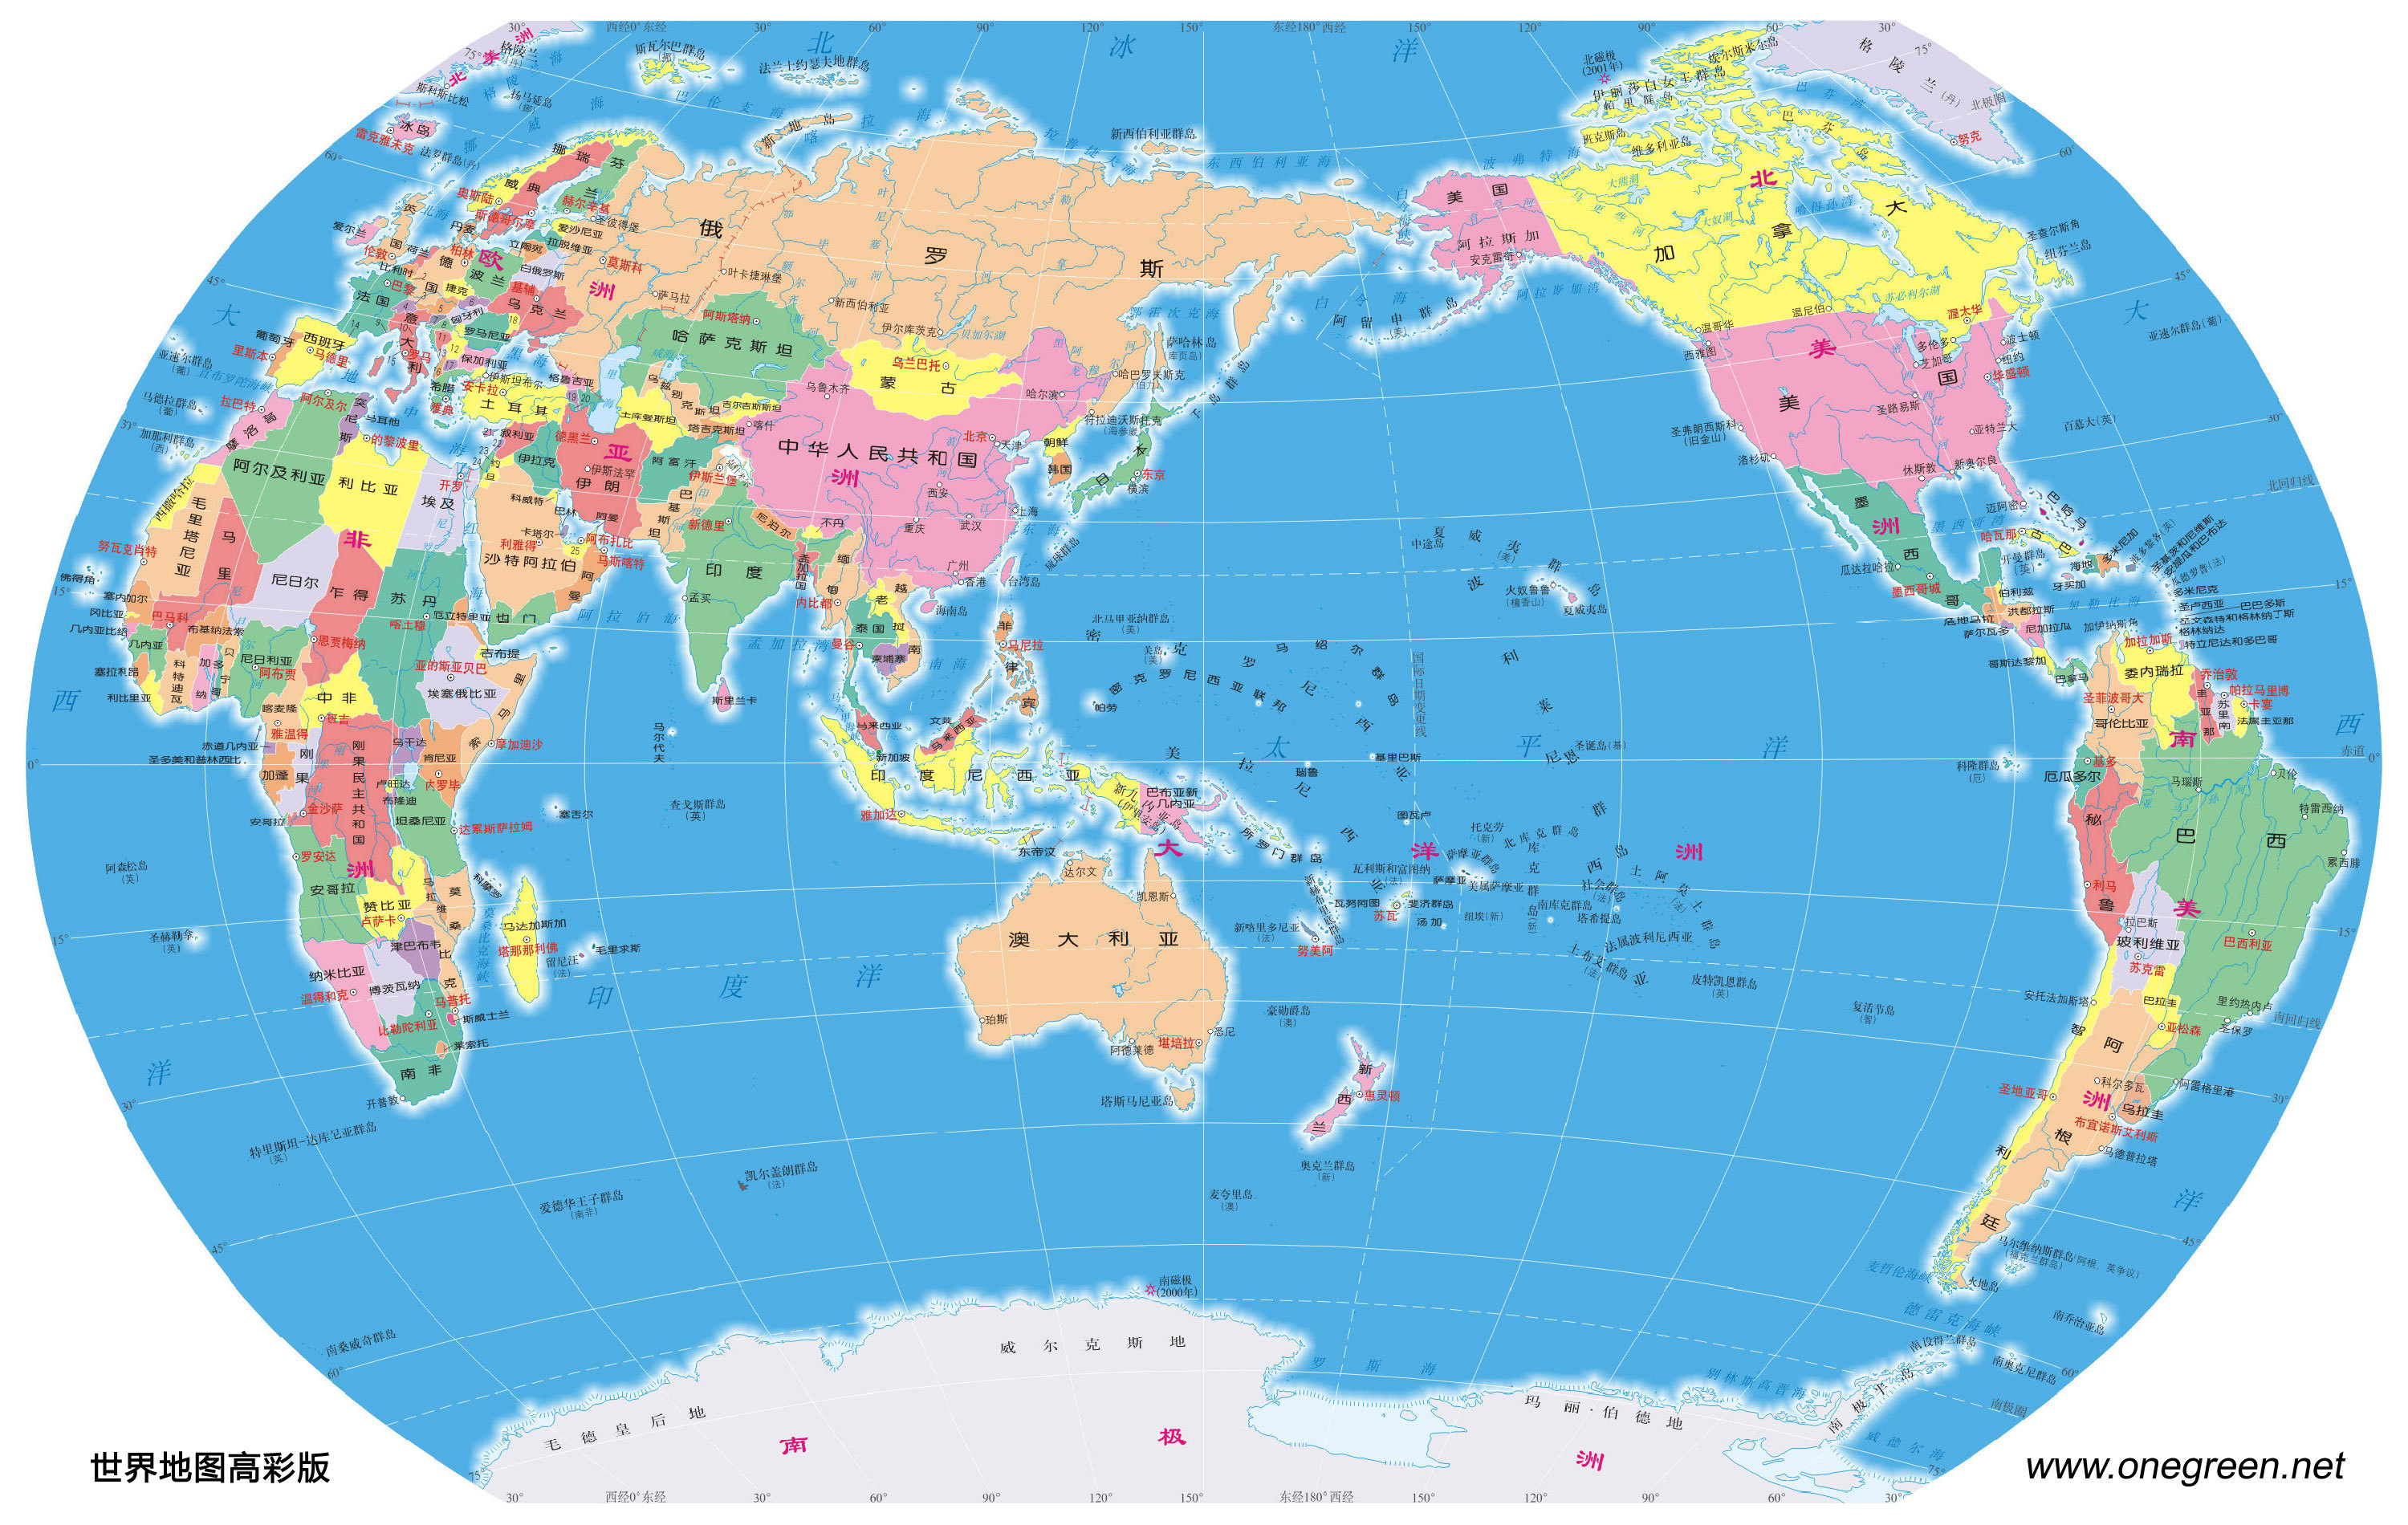 世界地图（高清、可下载的世界地图，有各种版本，如行政图、世界地形、交通等） - 图1